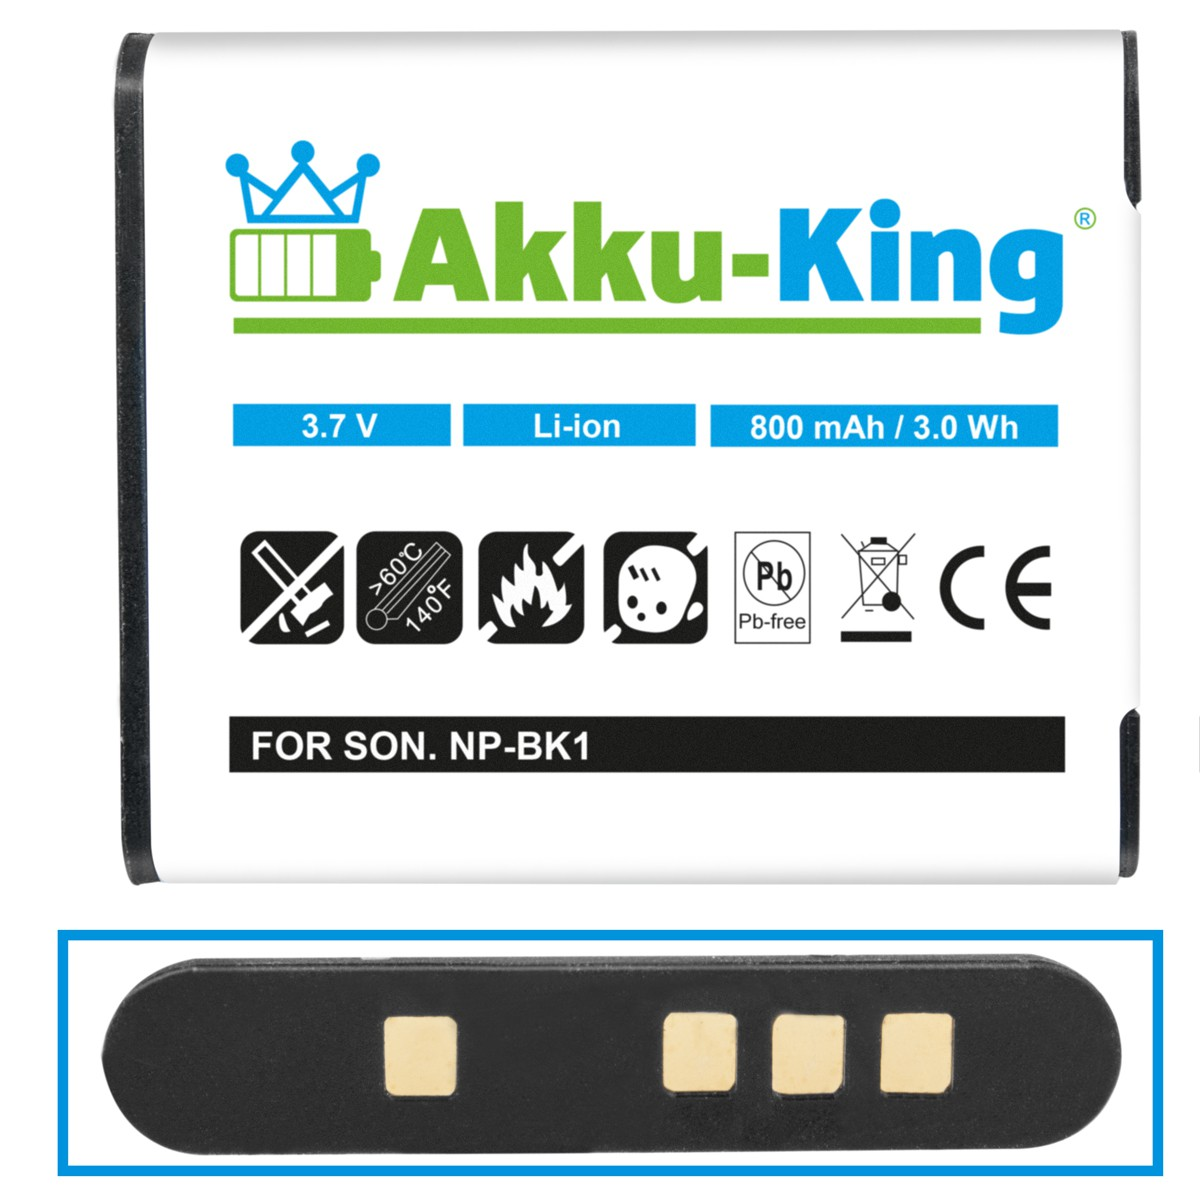 Volt, Akku kompatibel 800mAh 3.7 Li-Ion Kamera-Akku, NP-BK1 mit Sony AKKU-KING